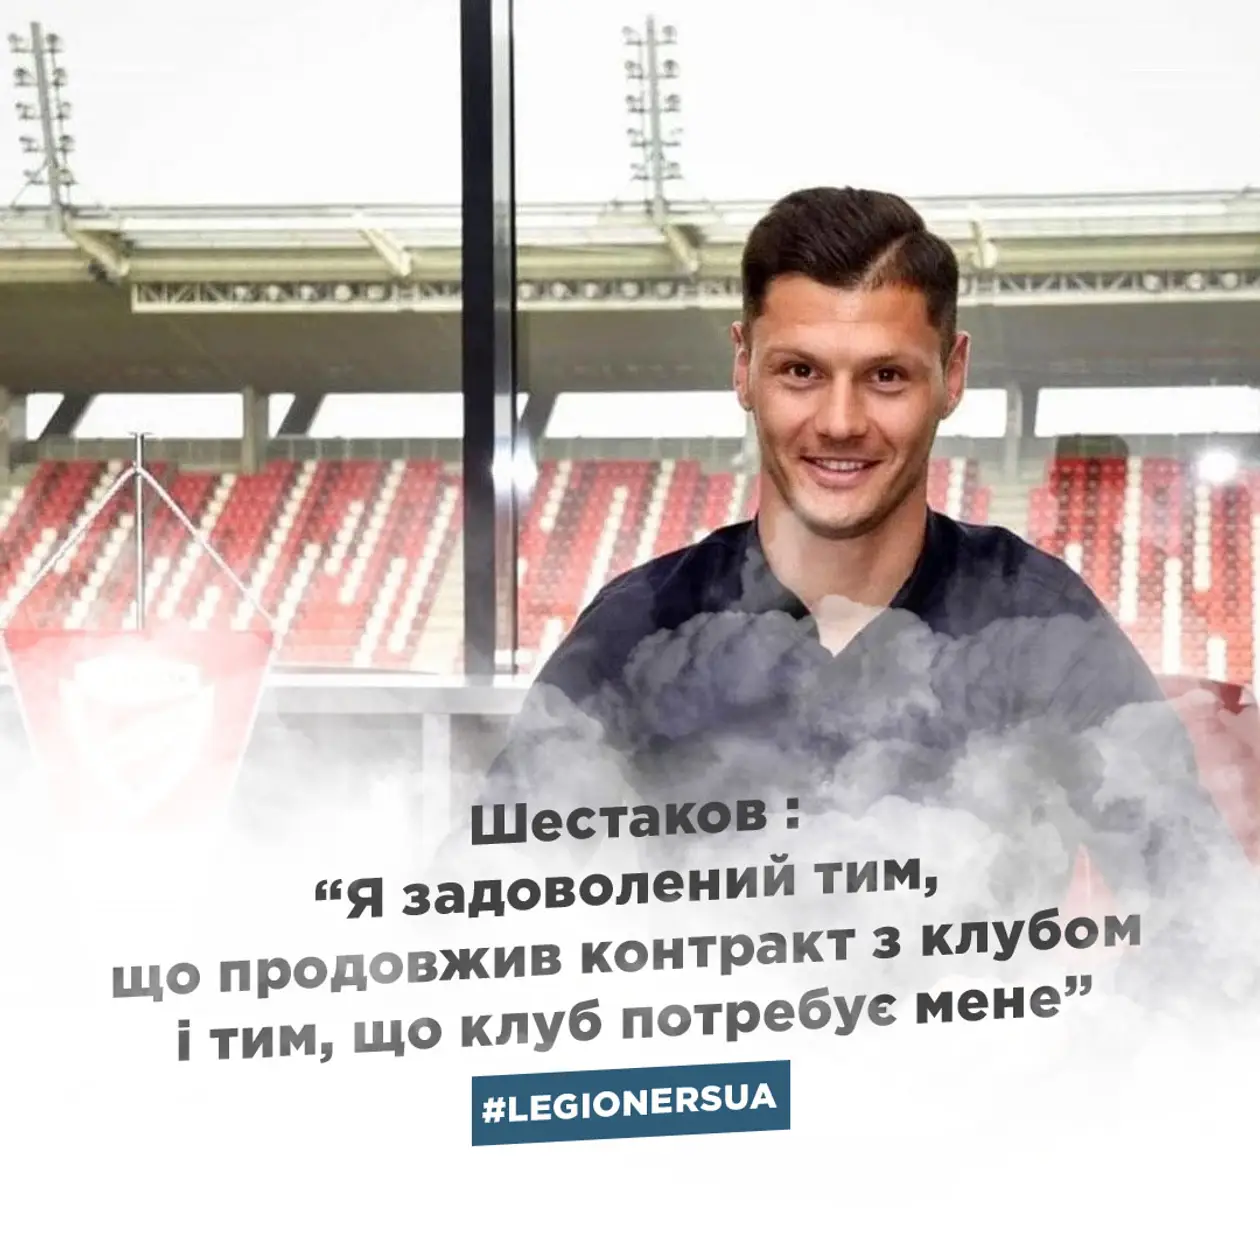 «Я задоволений тим, що продовжив контракт з клубом і тим, що клуб потребує мене» - Шестаков